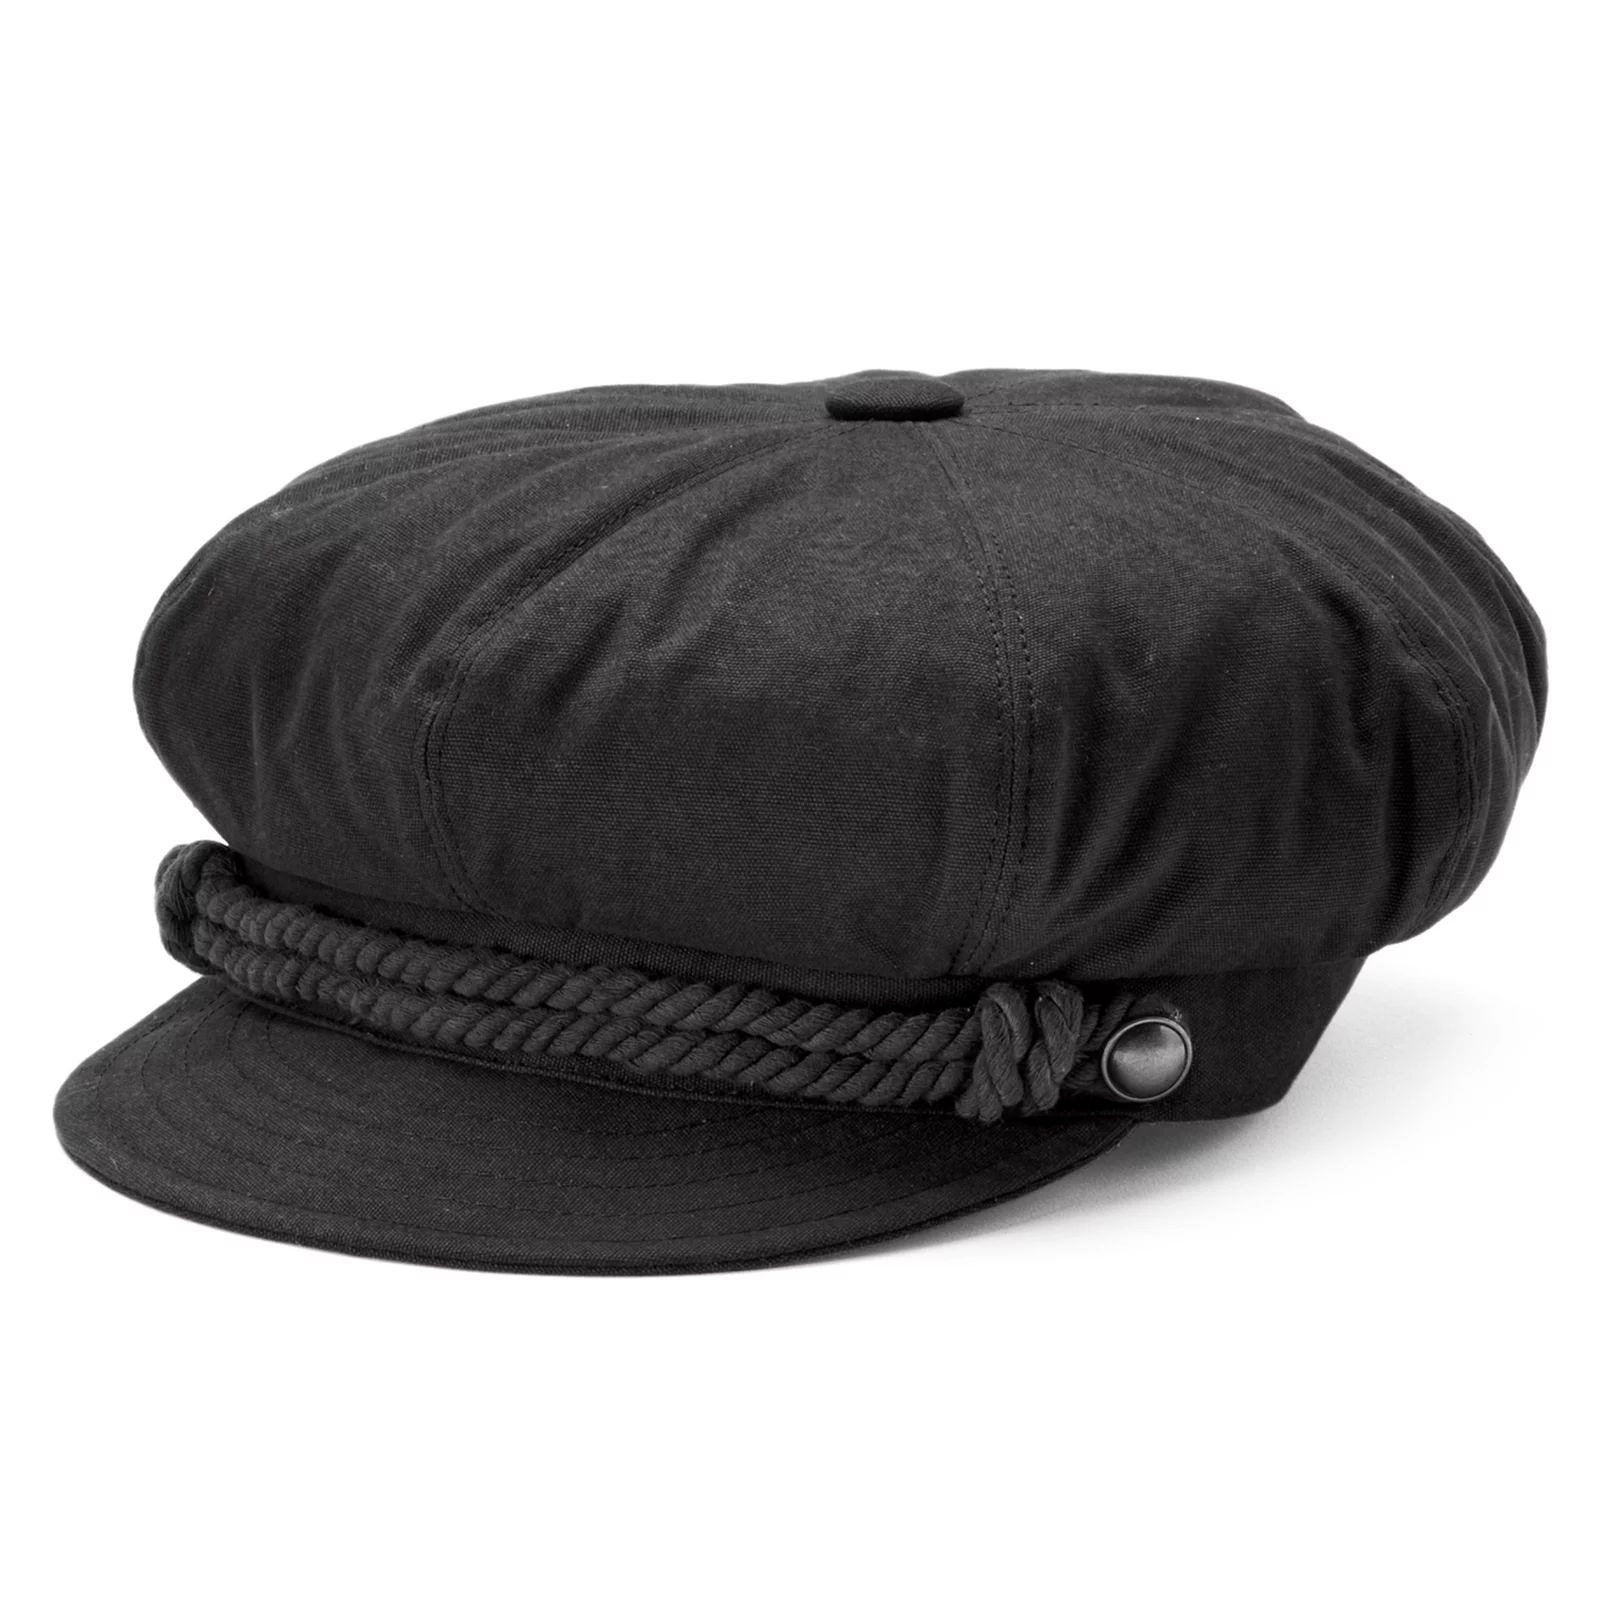 Betmar Fisherman Rope Trim Cat Hat, Black | Kohl's